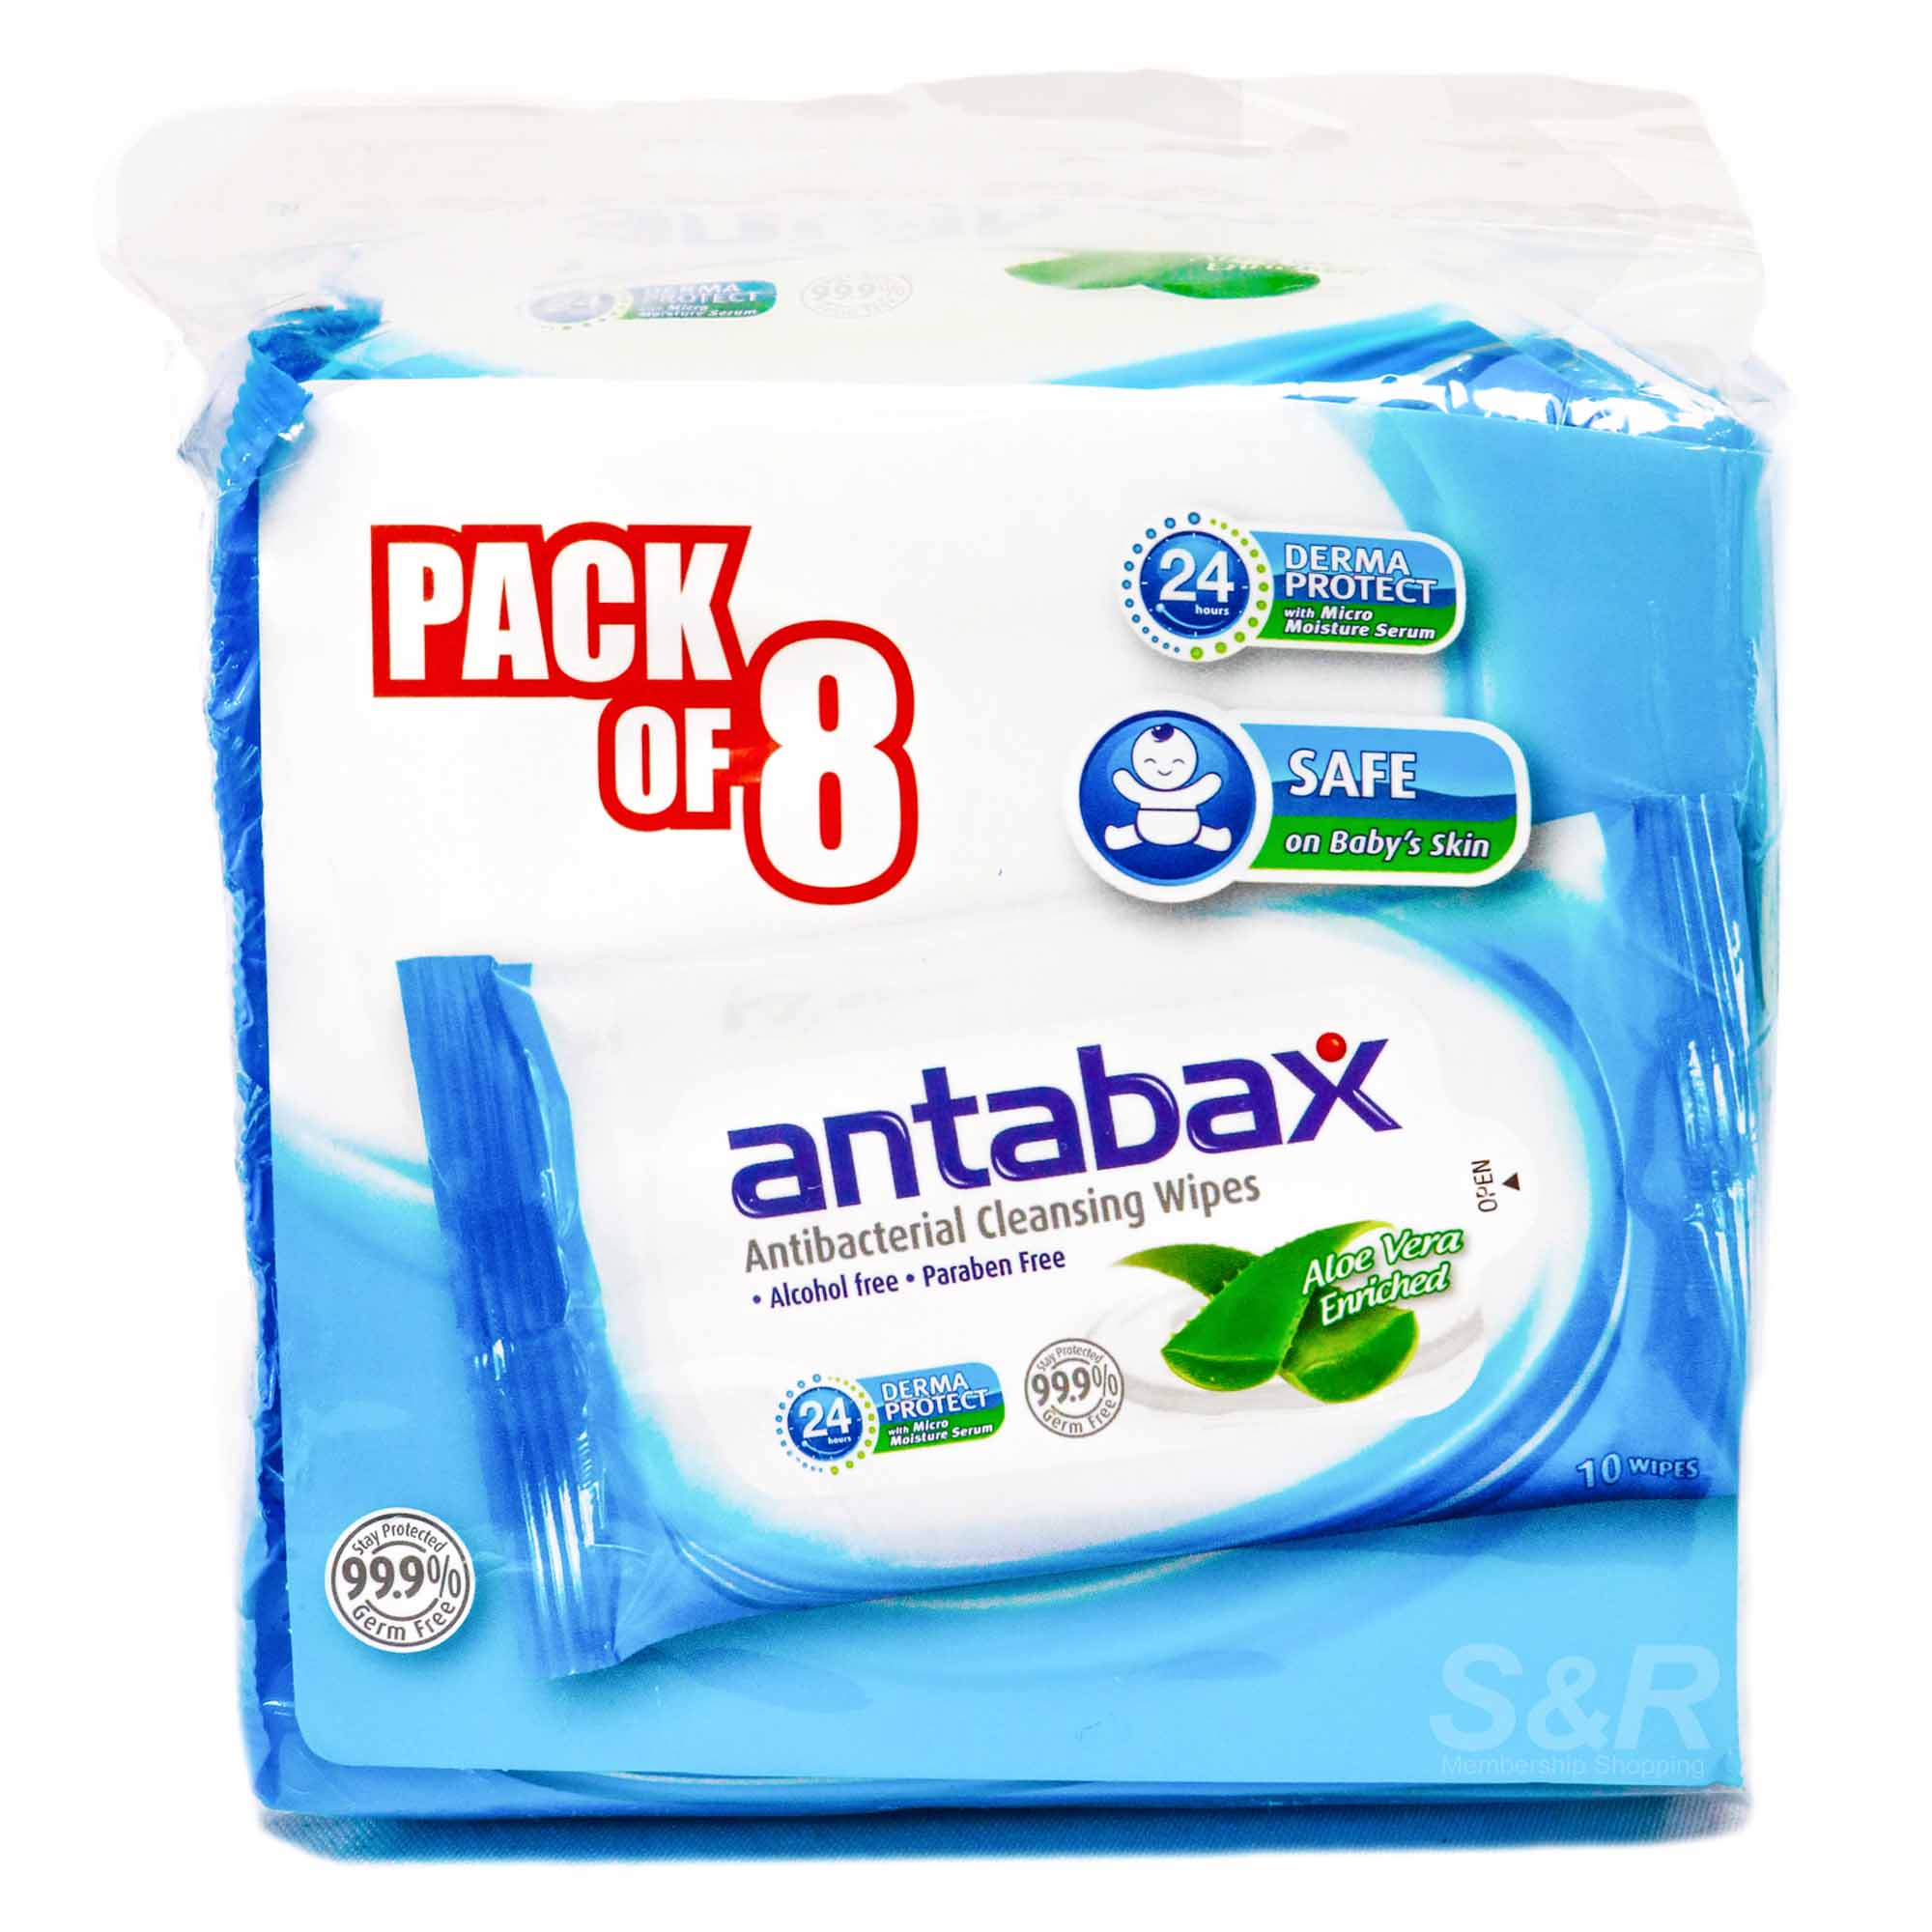 Antabax Antibacterial Cleansing Wipes 8 packs